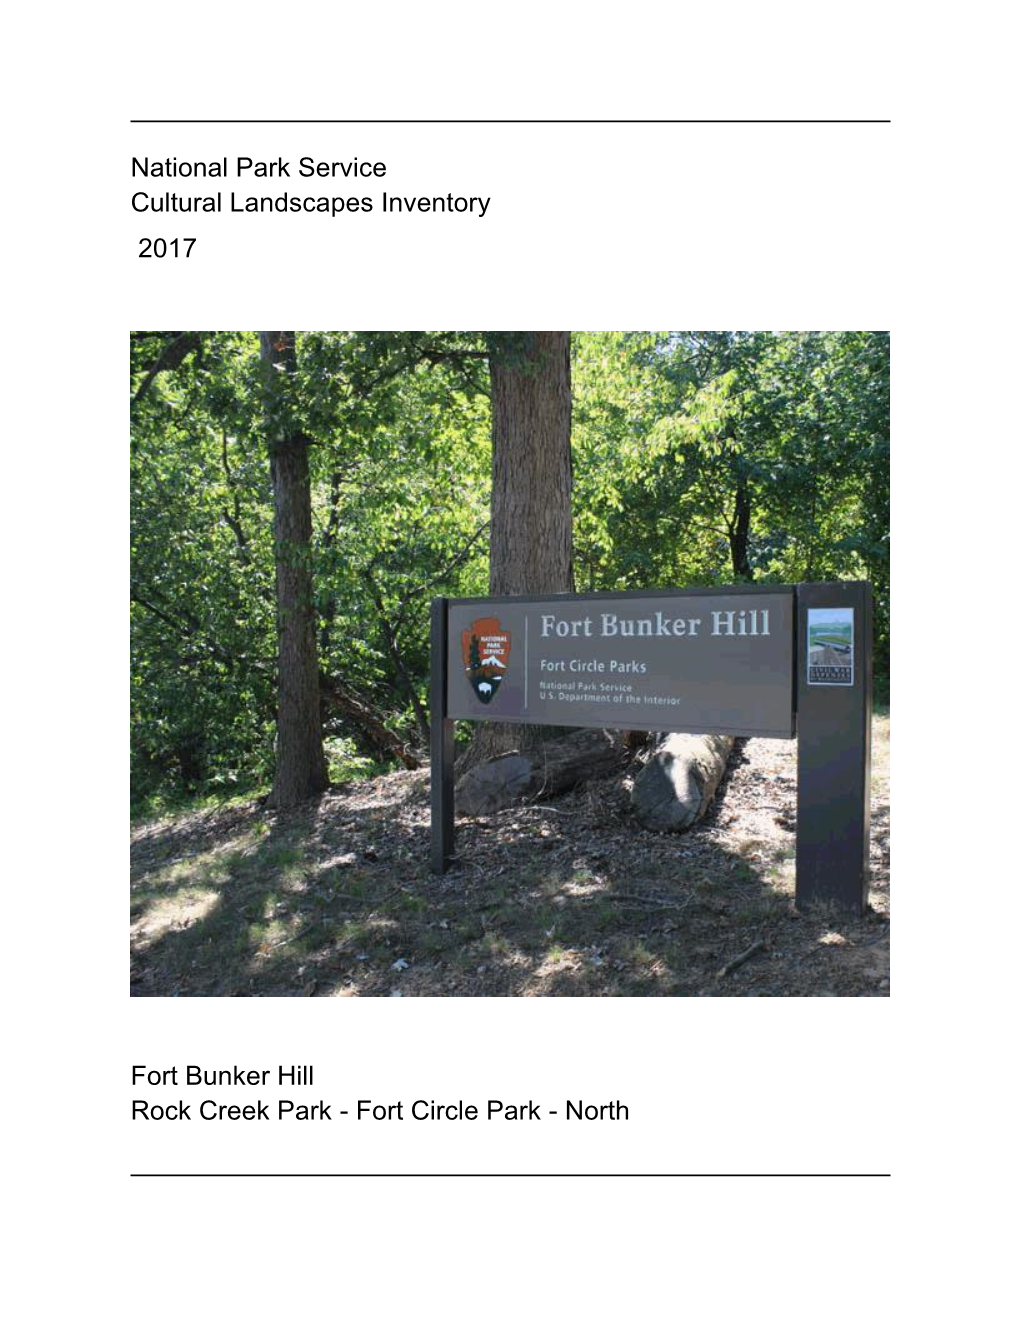 National Park Service Cultural Landscapes Inventory 2017 Fort